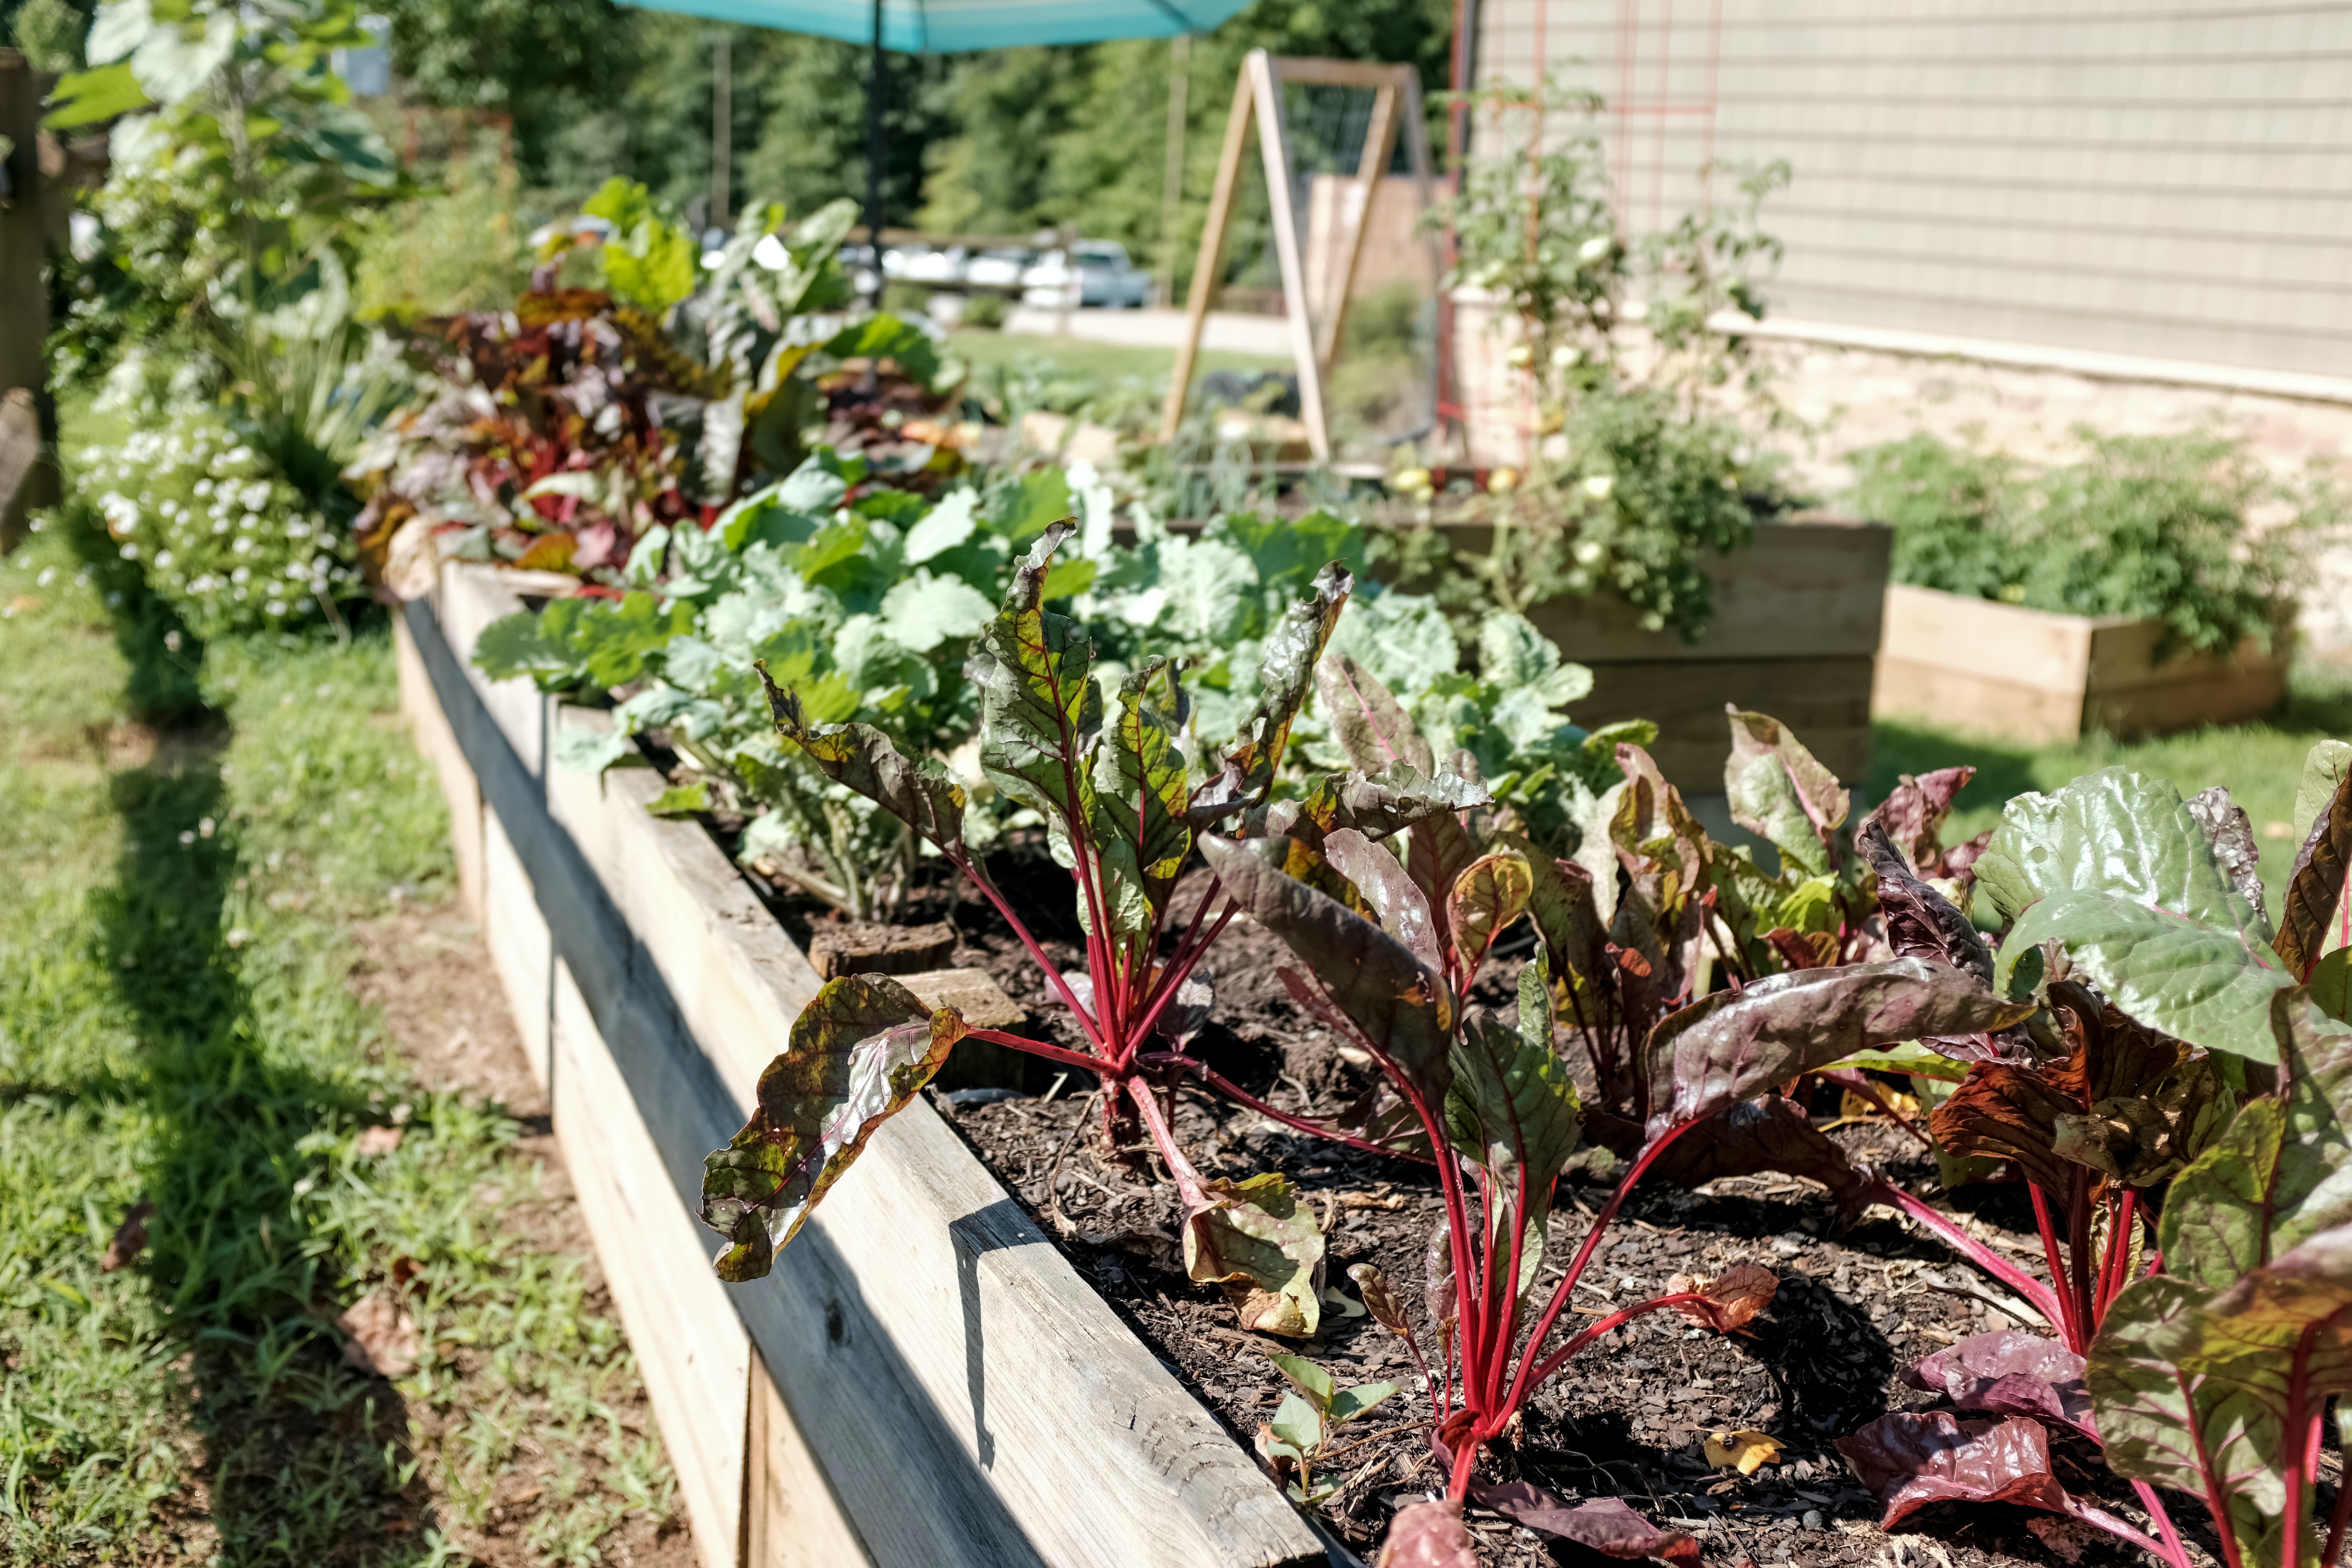 10 Beginners Tips: Setting up a kitchen garden